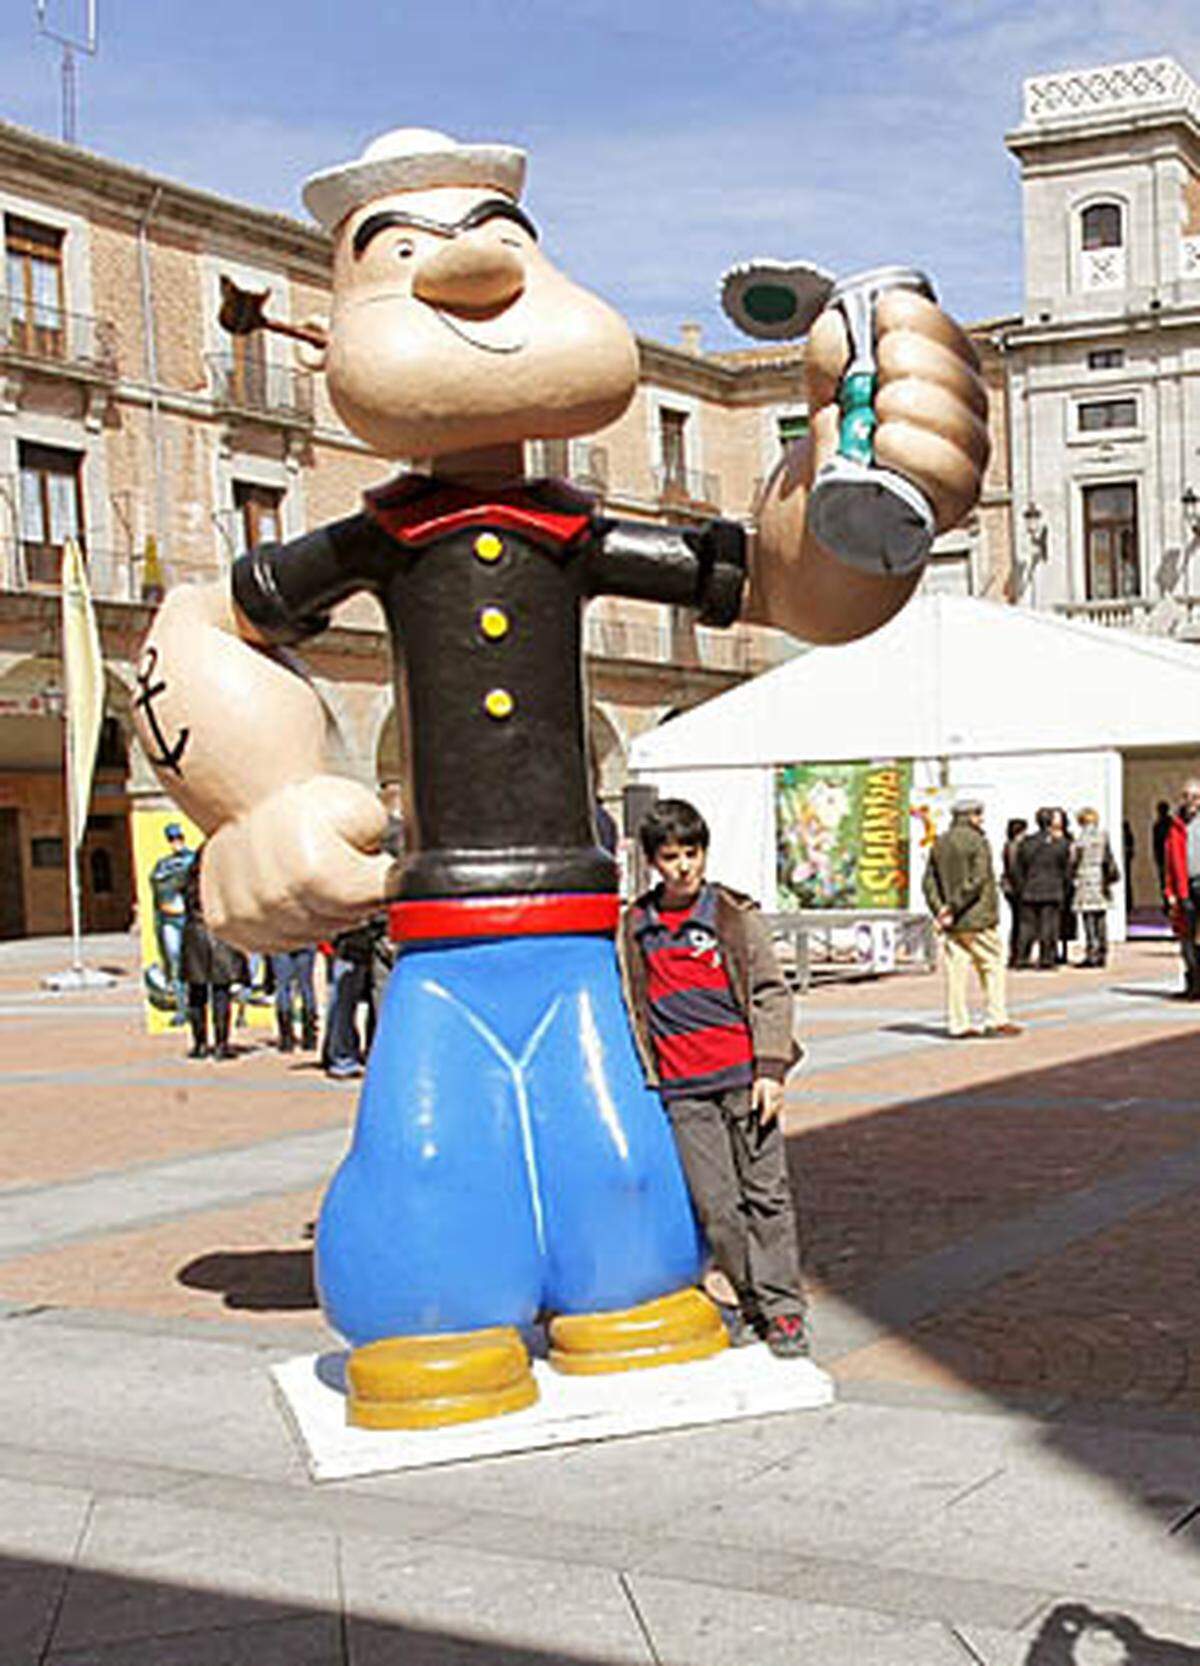 Popeye, der Seemann mit den größten Unterarm-Muskeln in der Geschichte des Zeichentricks, feiert sein großes Kino-Comeback in 3D und folgt damit auf Erfolge wie "Avatar" und "Alice im Wunderland". Ein Datum für den Drehbeginn ist noch nicht fixiert, der Film wird von Sony Pictures Animation produziert.  Die Tochterfirma ImageWorks, die sich auf Zeichentrickfilme und visuelle Effekte spezialisiert hat, wird Popeye, seiner Verlobten Olivia und dem Bösewicht Brutus dank der Technologie CGI Leben einhauchen.  Popeye hatte seinen letzten Auftritt auf der großen Leinwand im Jahr 1980 mit Robin Williams in der Hauptrolle.  Quelle: "Variety"